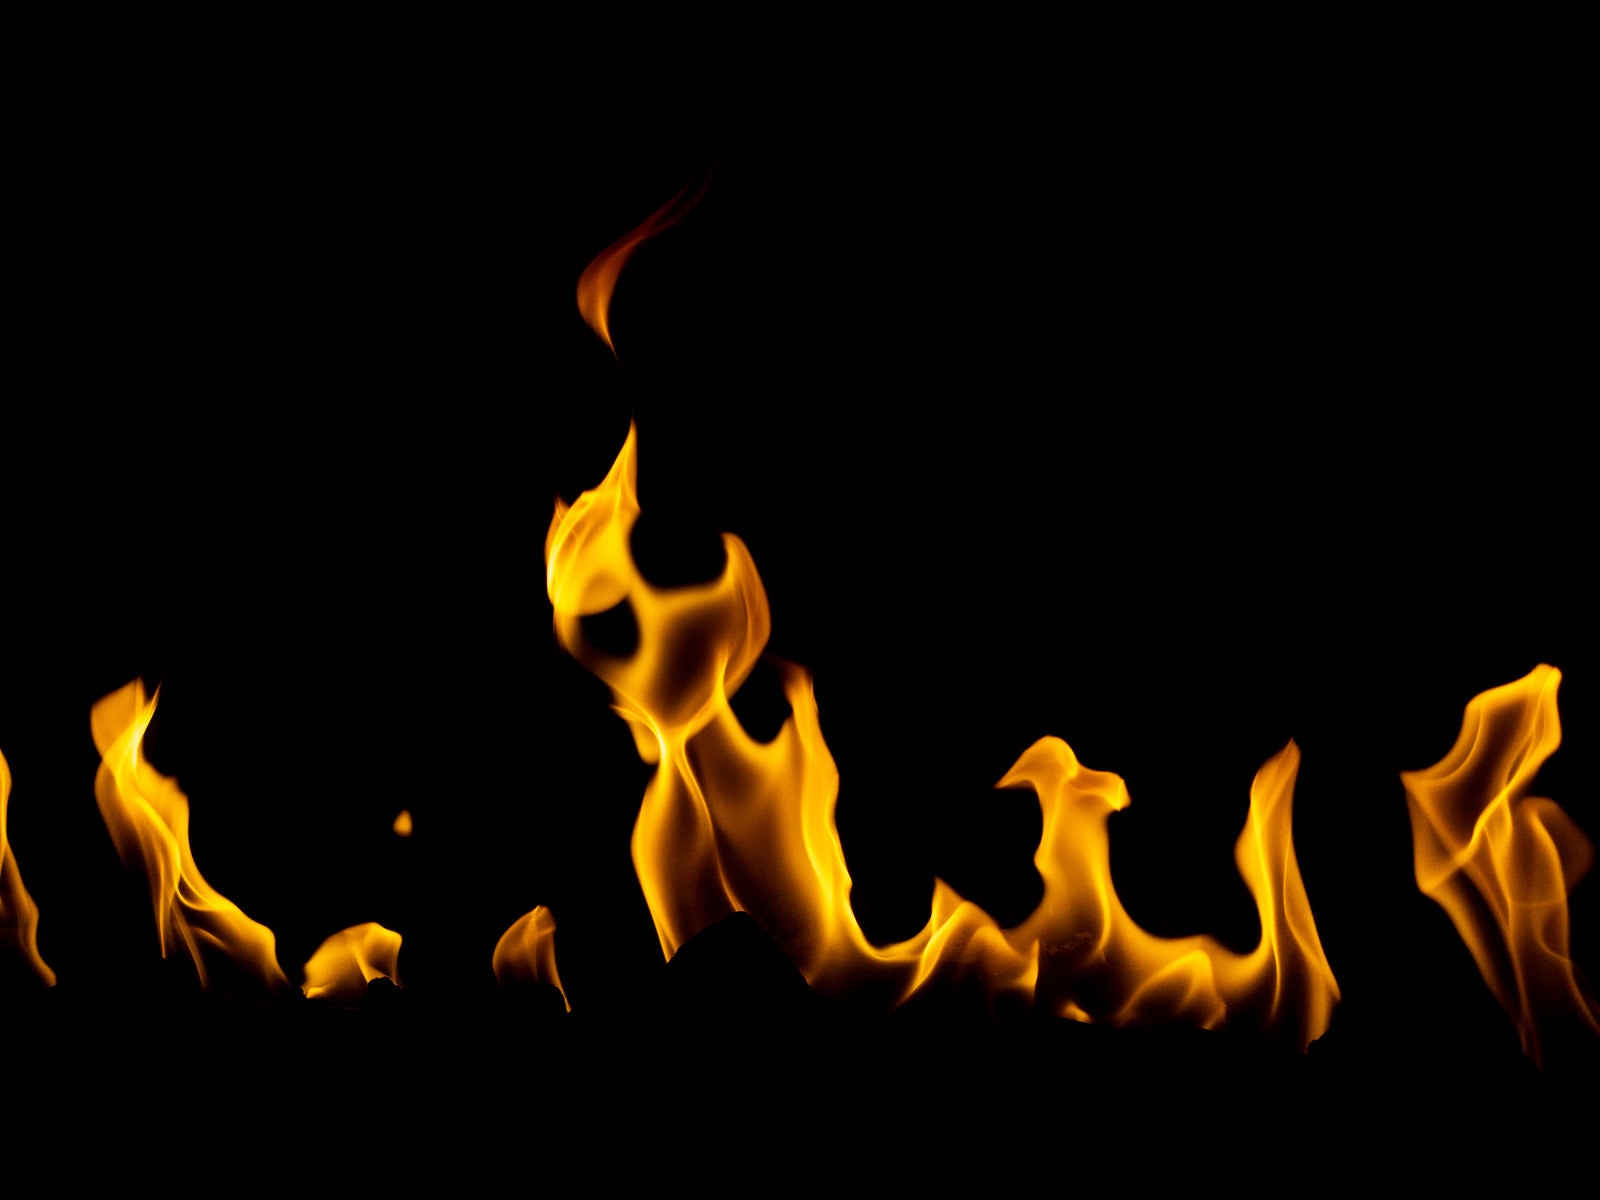 「ゆらゆらと燃える炎」の写真